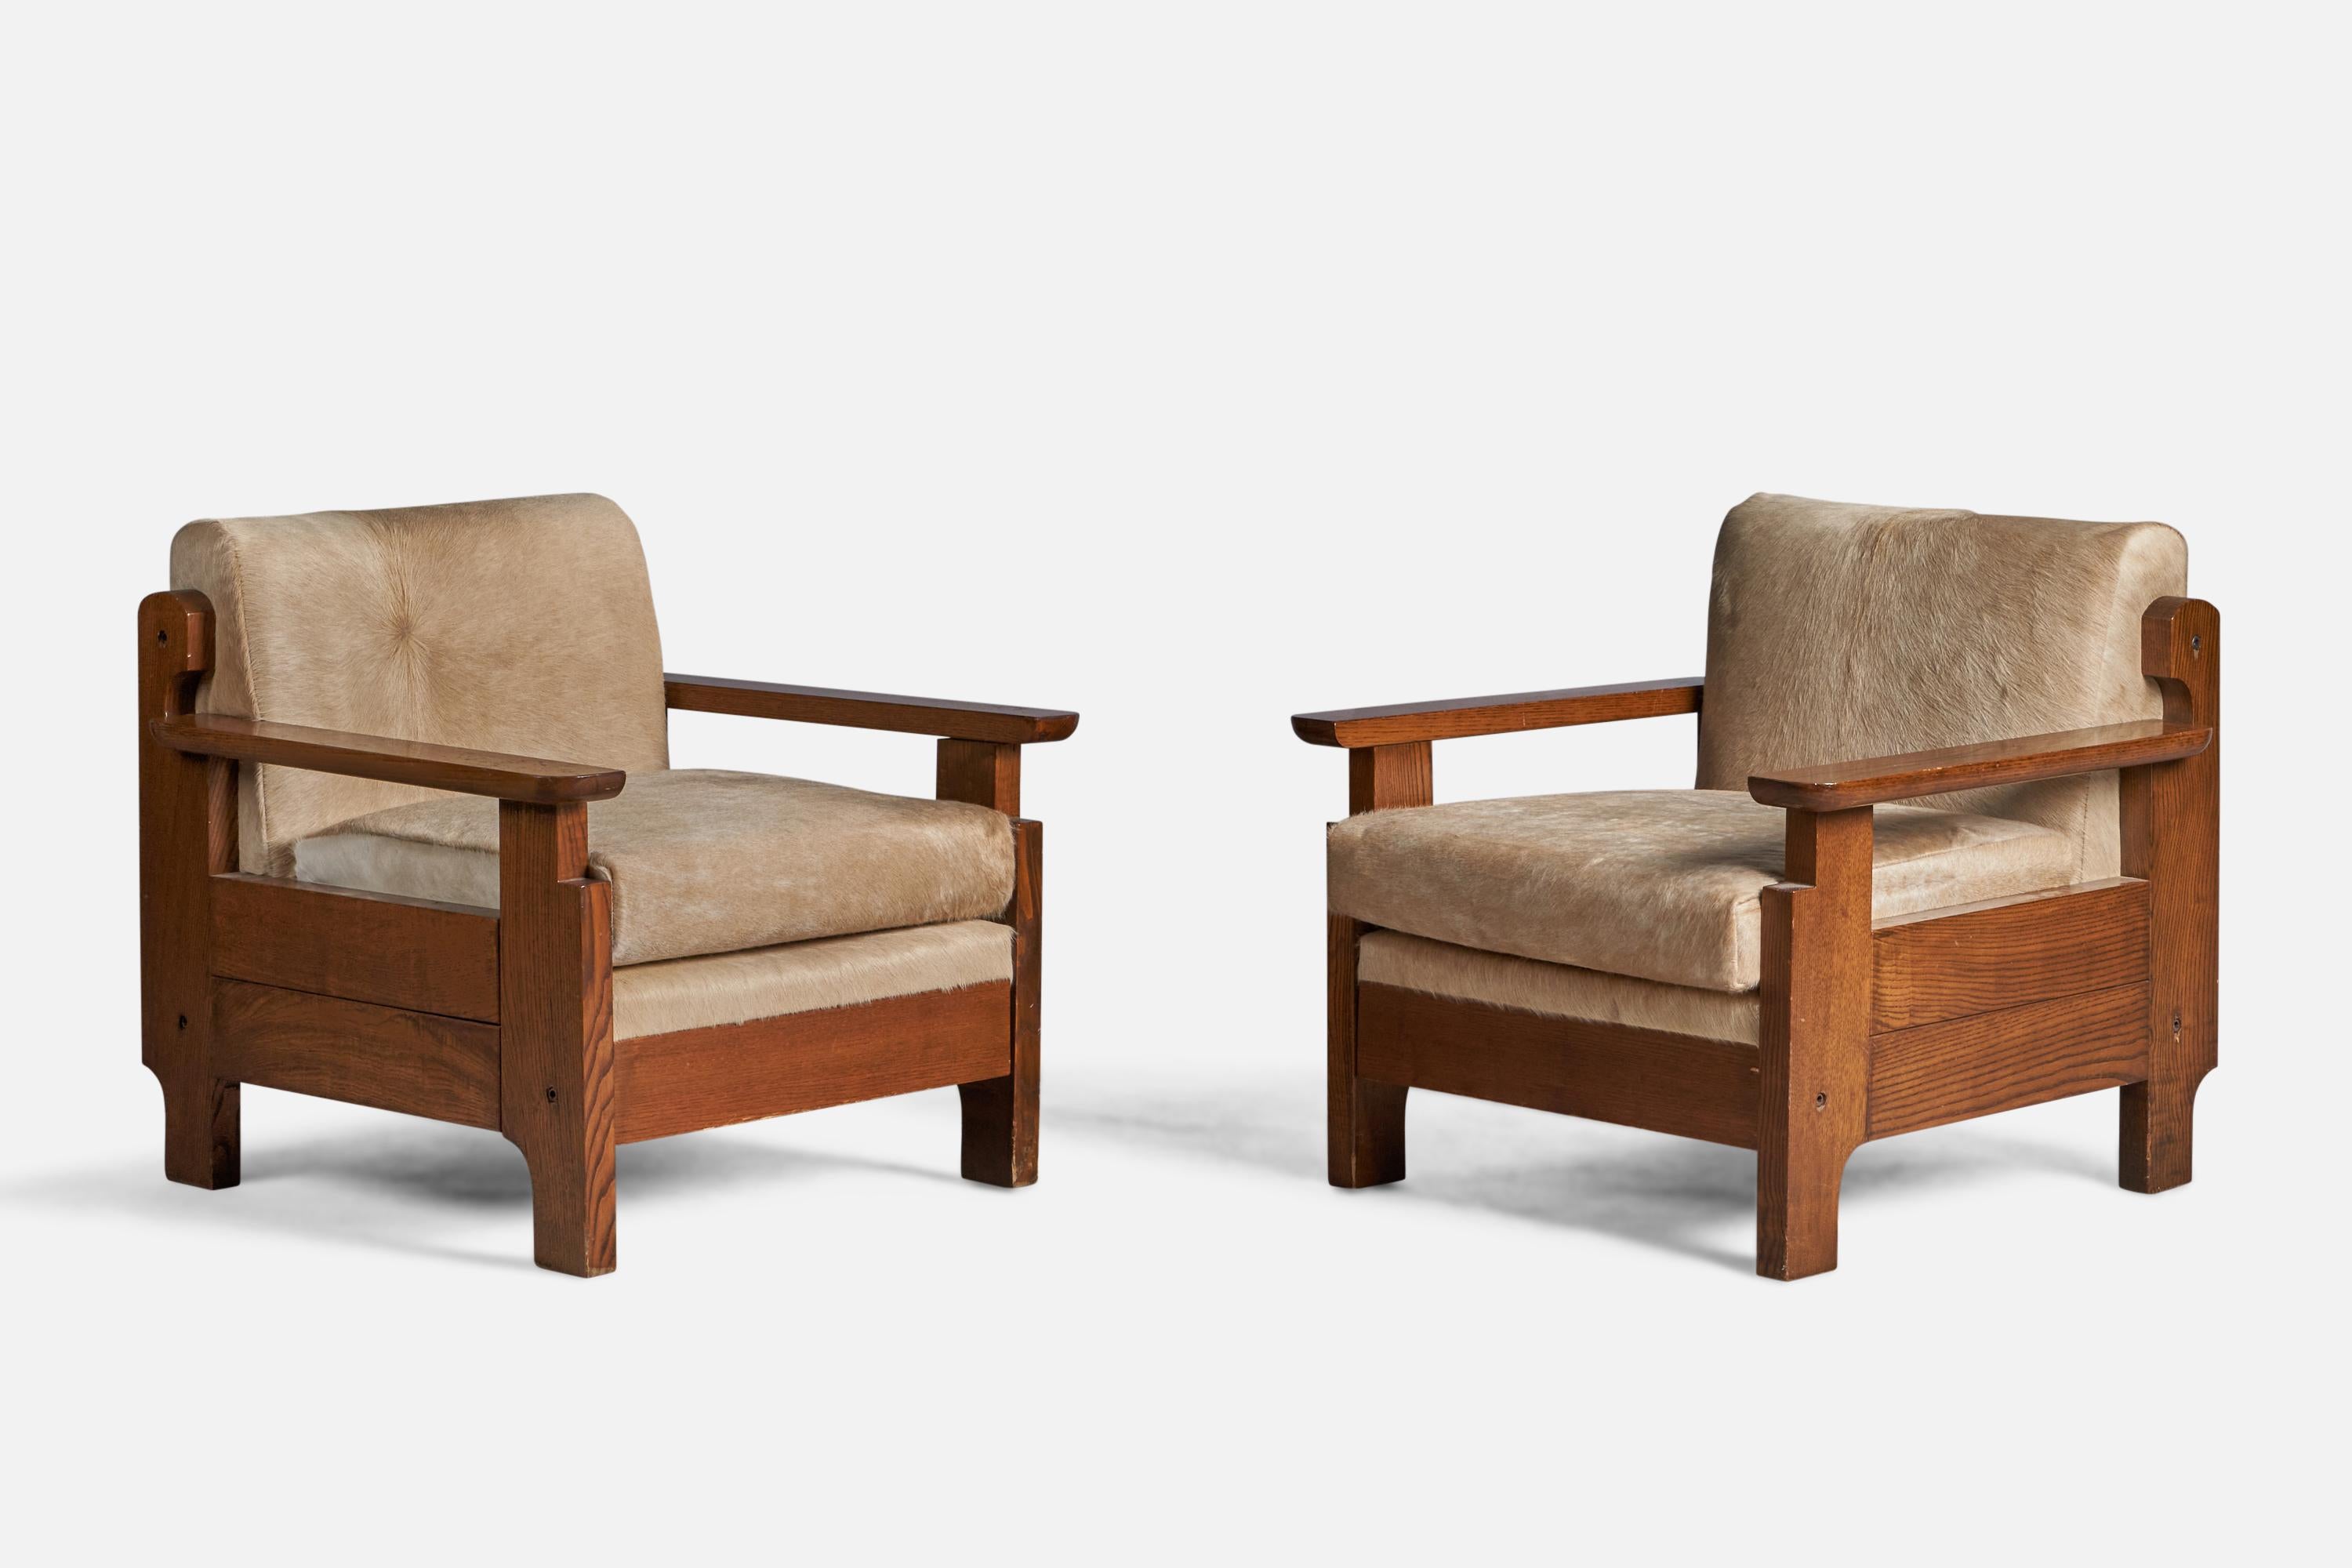 Ein Paar Lounge-Sessel aus gebeiztem Kiefernholz und beigem Rindsleder, entworfen und hergestellt in Italien, ca. 1960er Jahre.

16,5